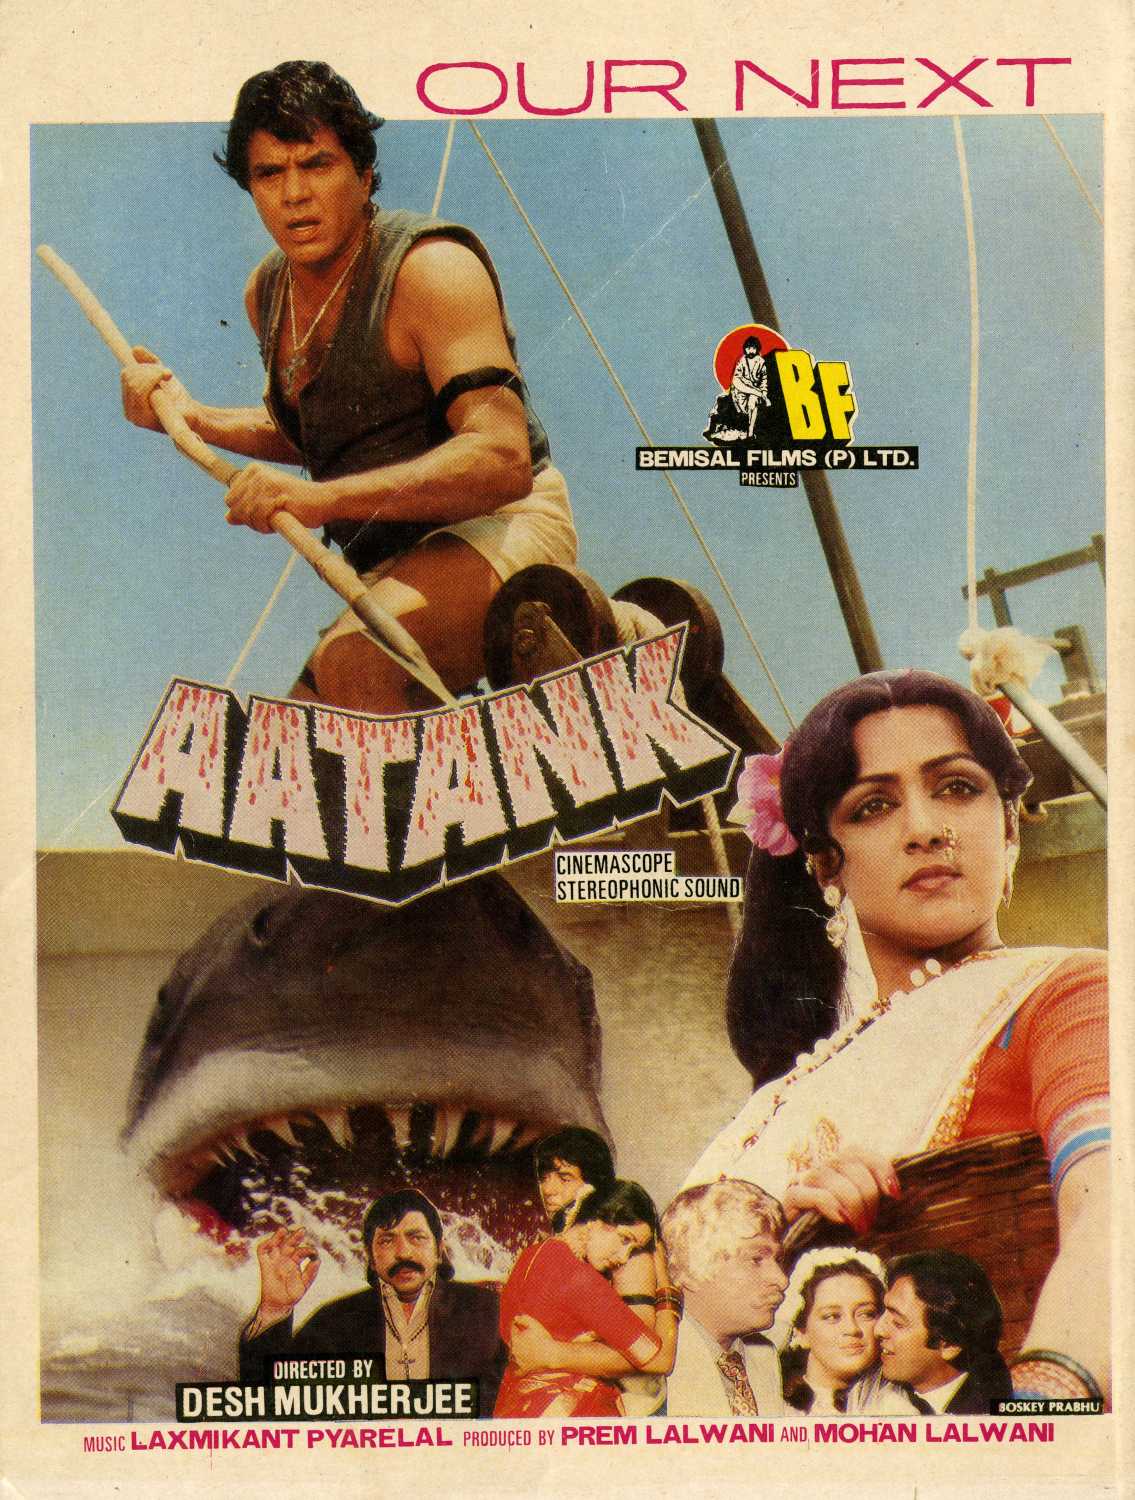 Aatank (1996) with English Subtitles on DVD on DVD